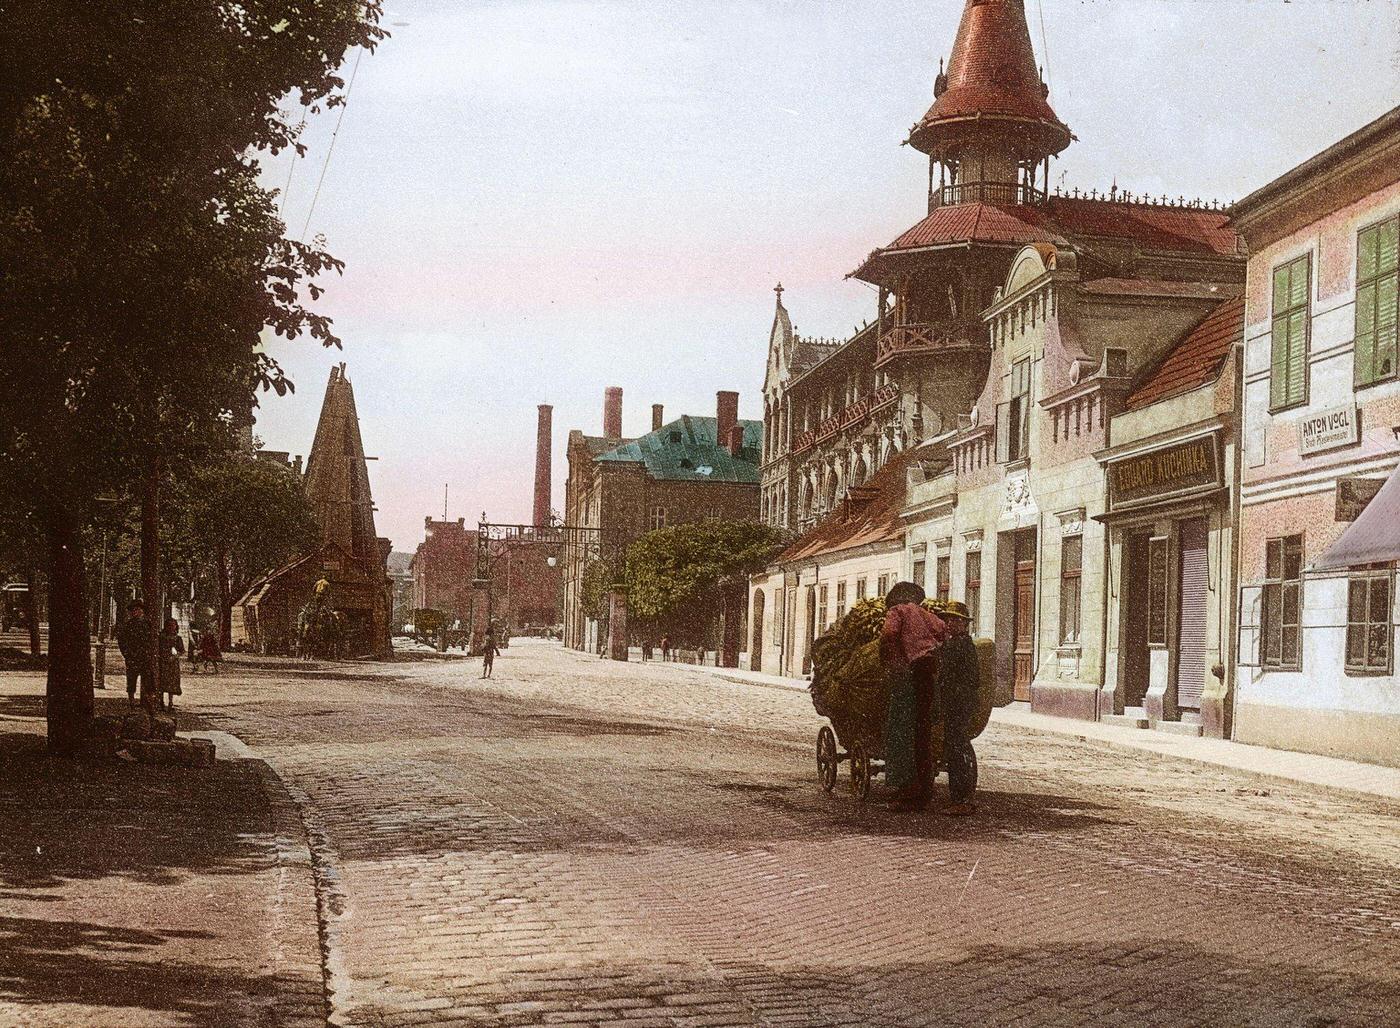 The Brauhaus Liesing brewery on Breitenfurter Strasse in Vienna's 23rd district, 1900.